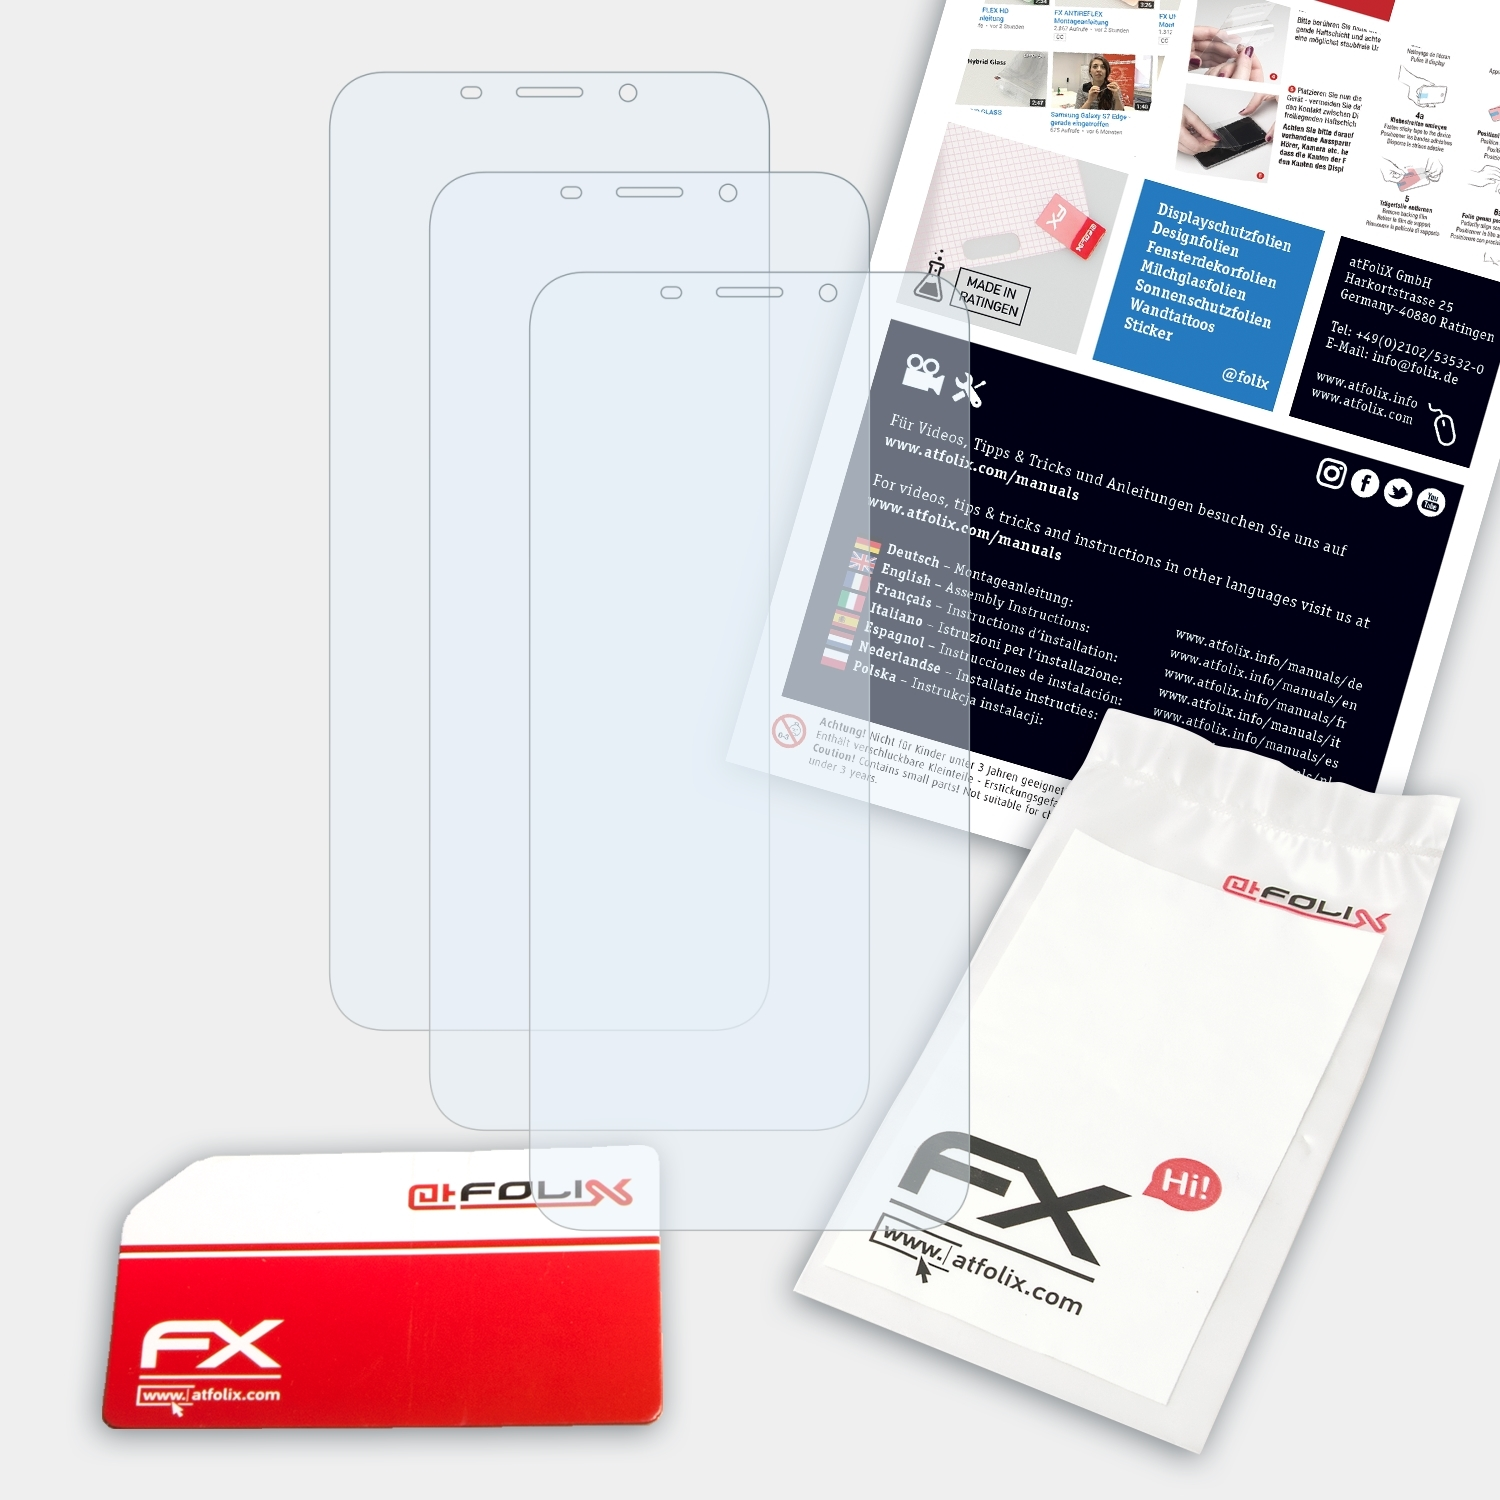 FX-Clear 3x M6s) Meizu Displayschutz(für ATFOLIX